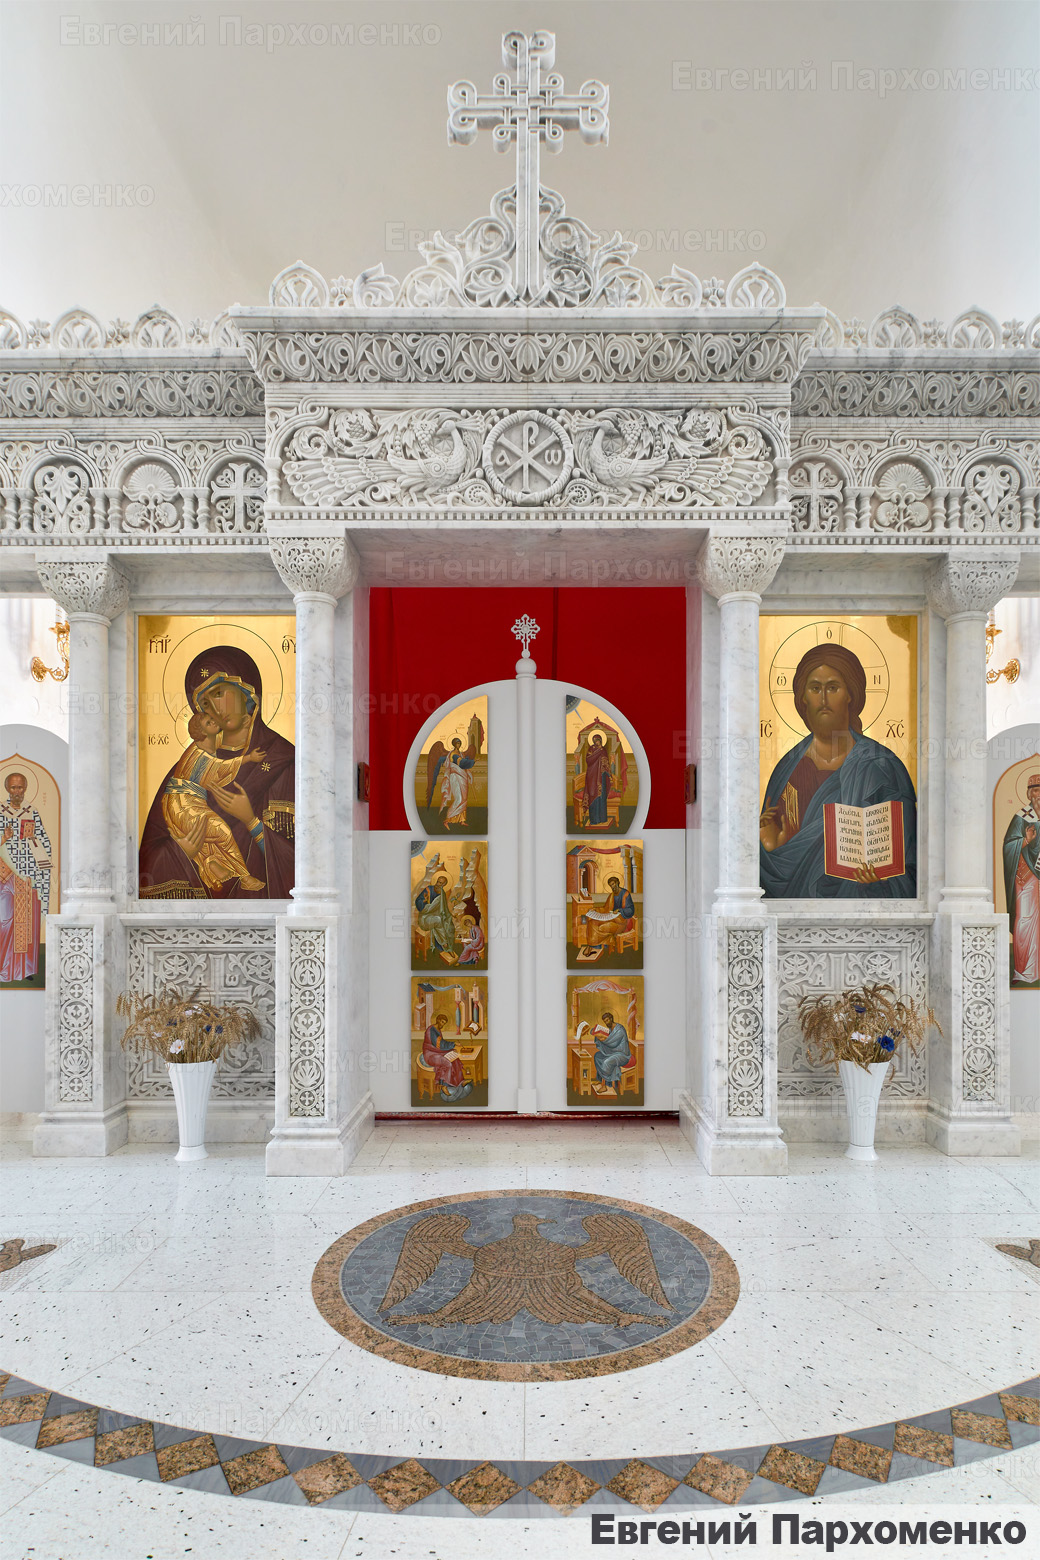 Центральная часть иконостаса из белого камня с павлином над царскими вратами